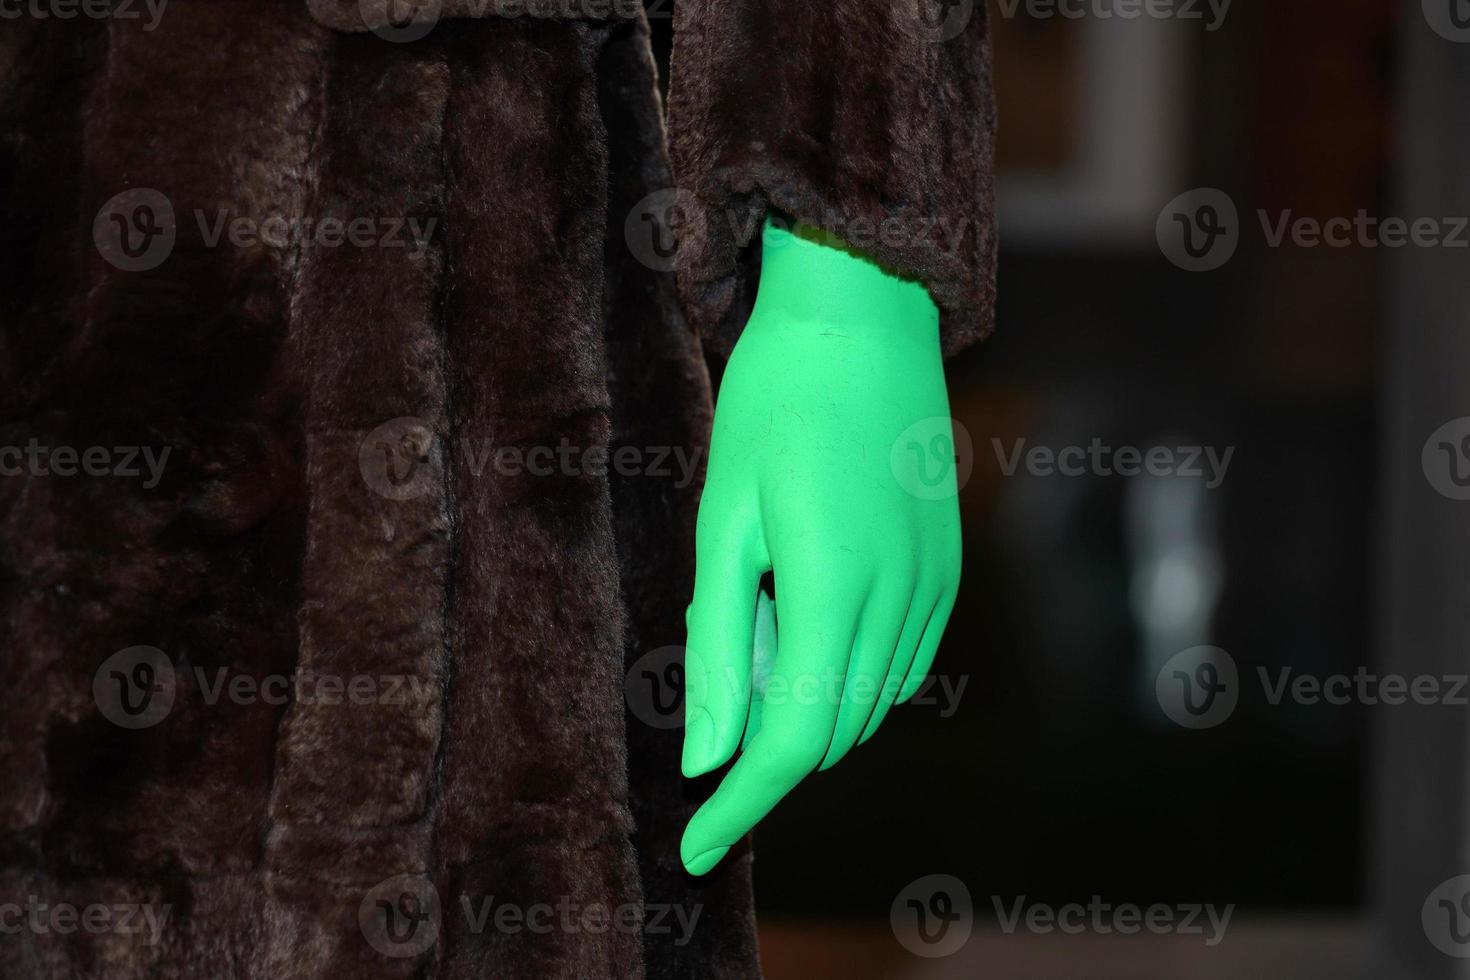 mano verde en el detalle de la ropa de piel animal foto